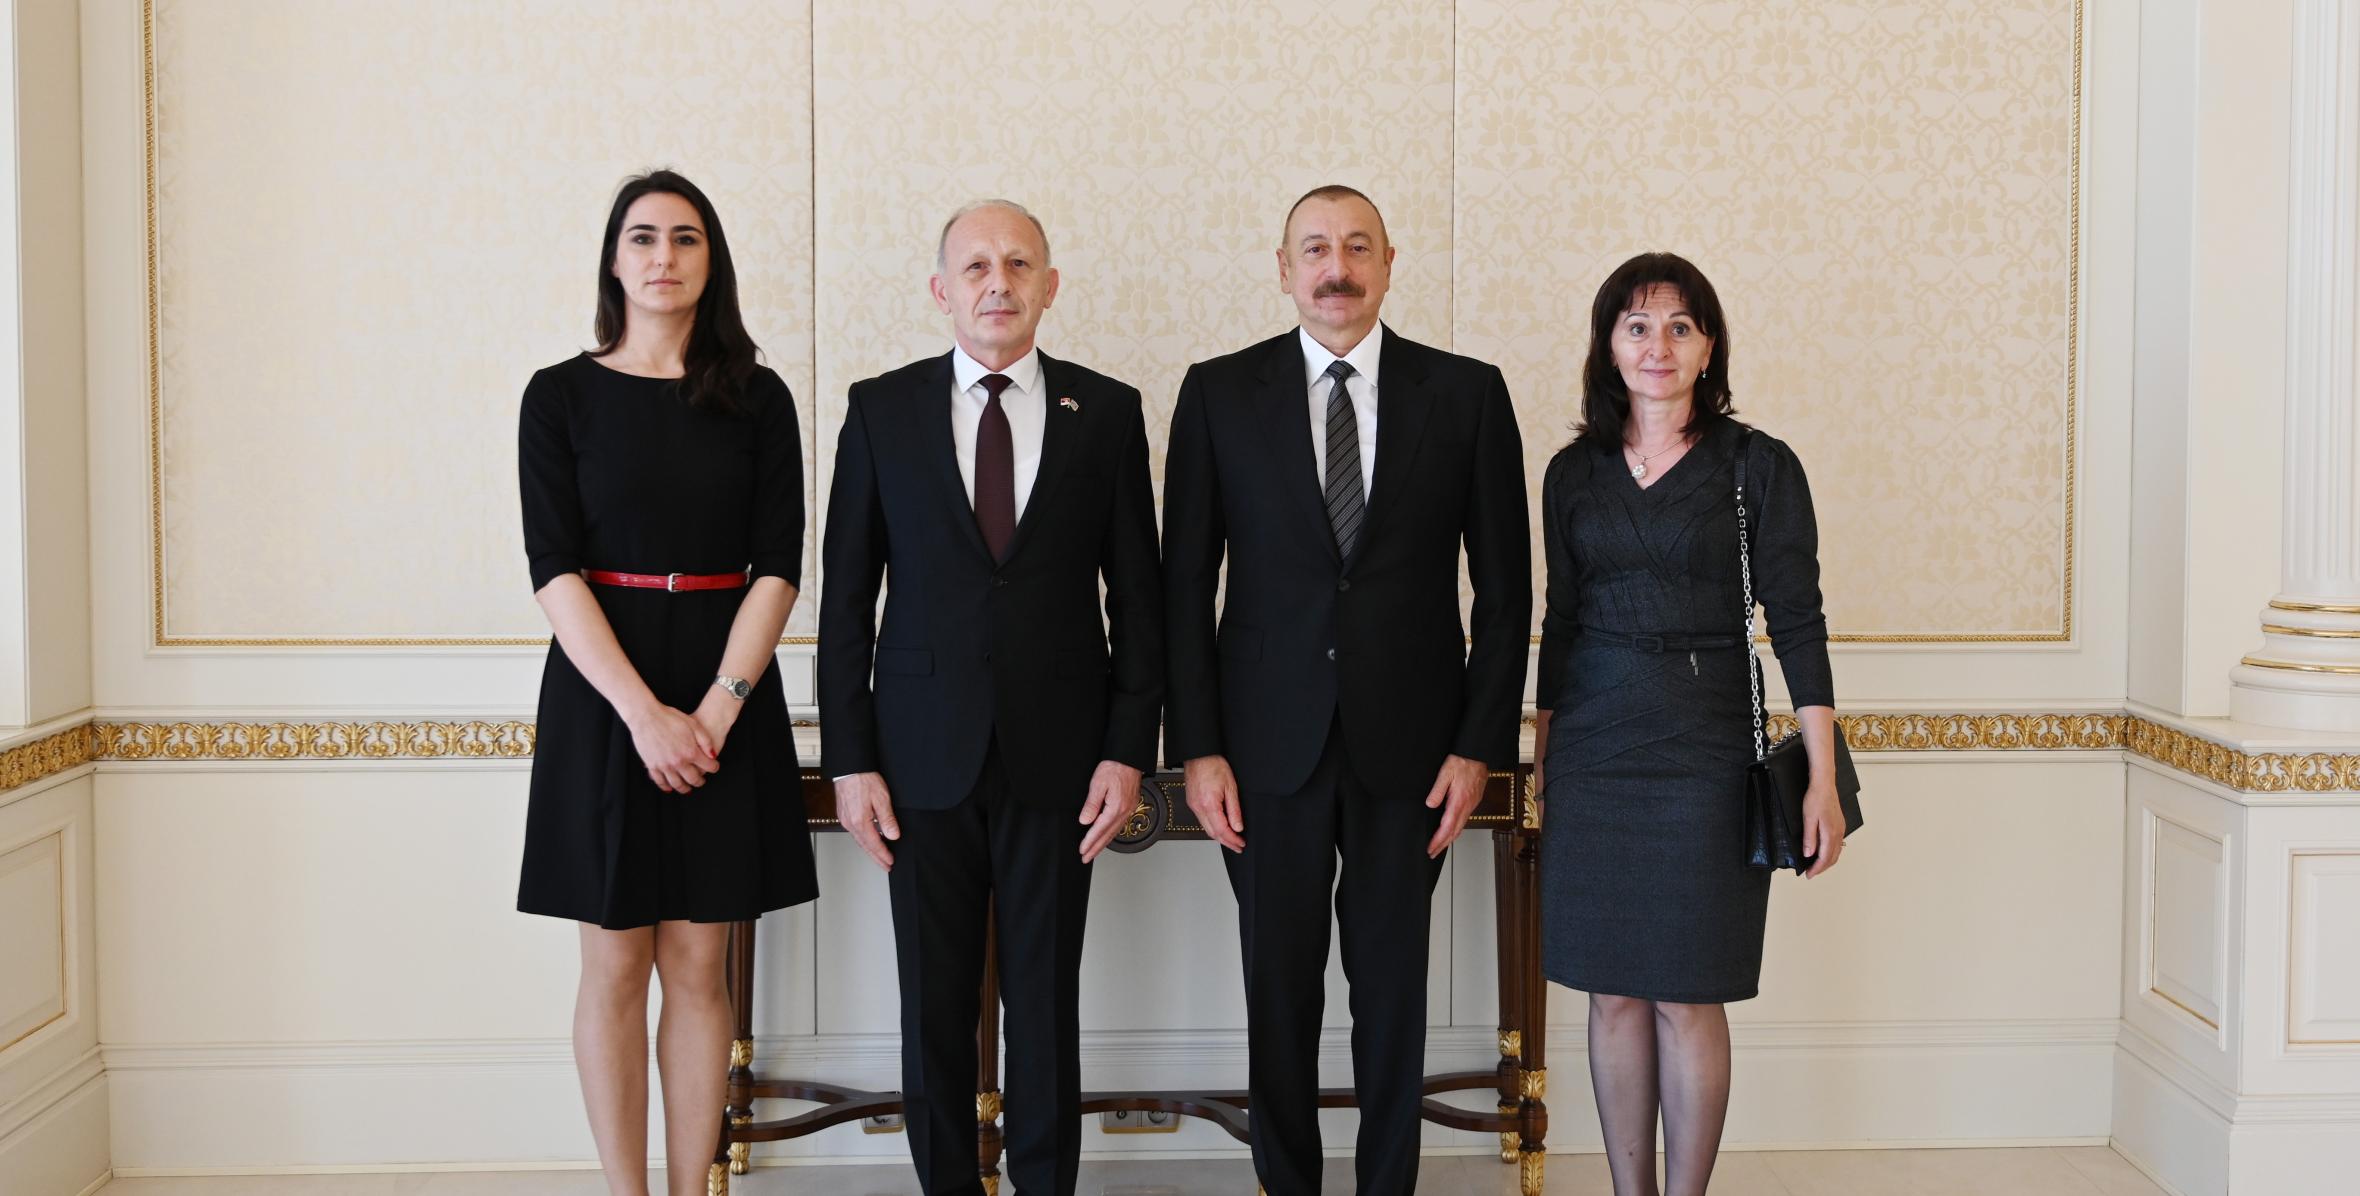 Ильхам Алиев принял верительные грамоты новоназначенного посла Сербии в Азербайджане